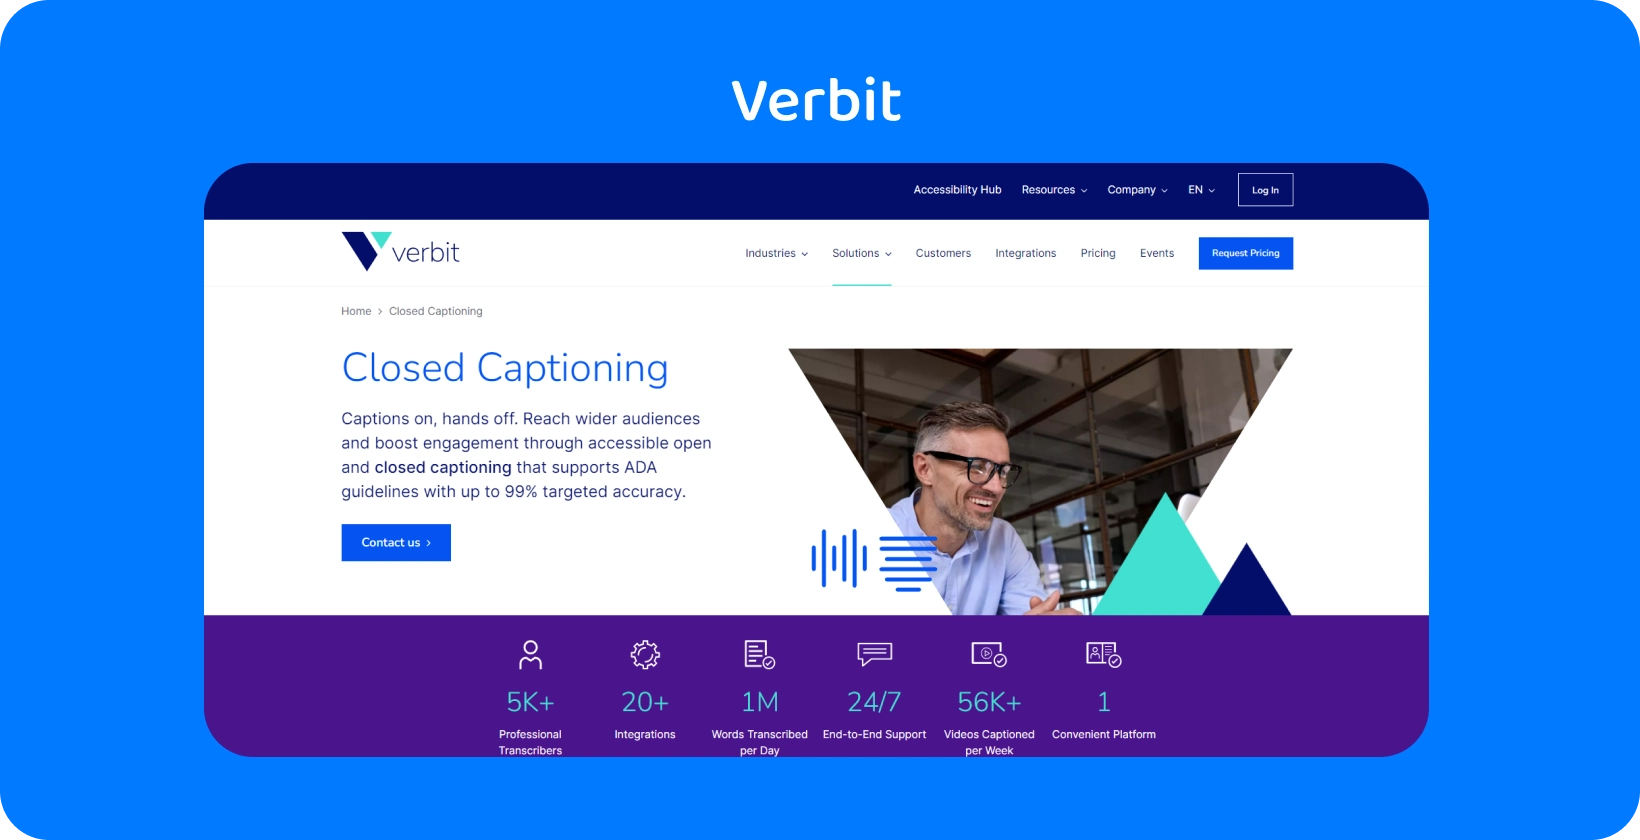 صفحة خدمة التسميات التوضيحية والنسخ في Verbit ، والتي تقدم خيارات دعم وخدمة ذاتية مخصصة.